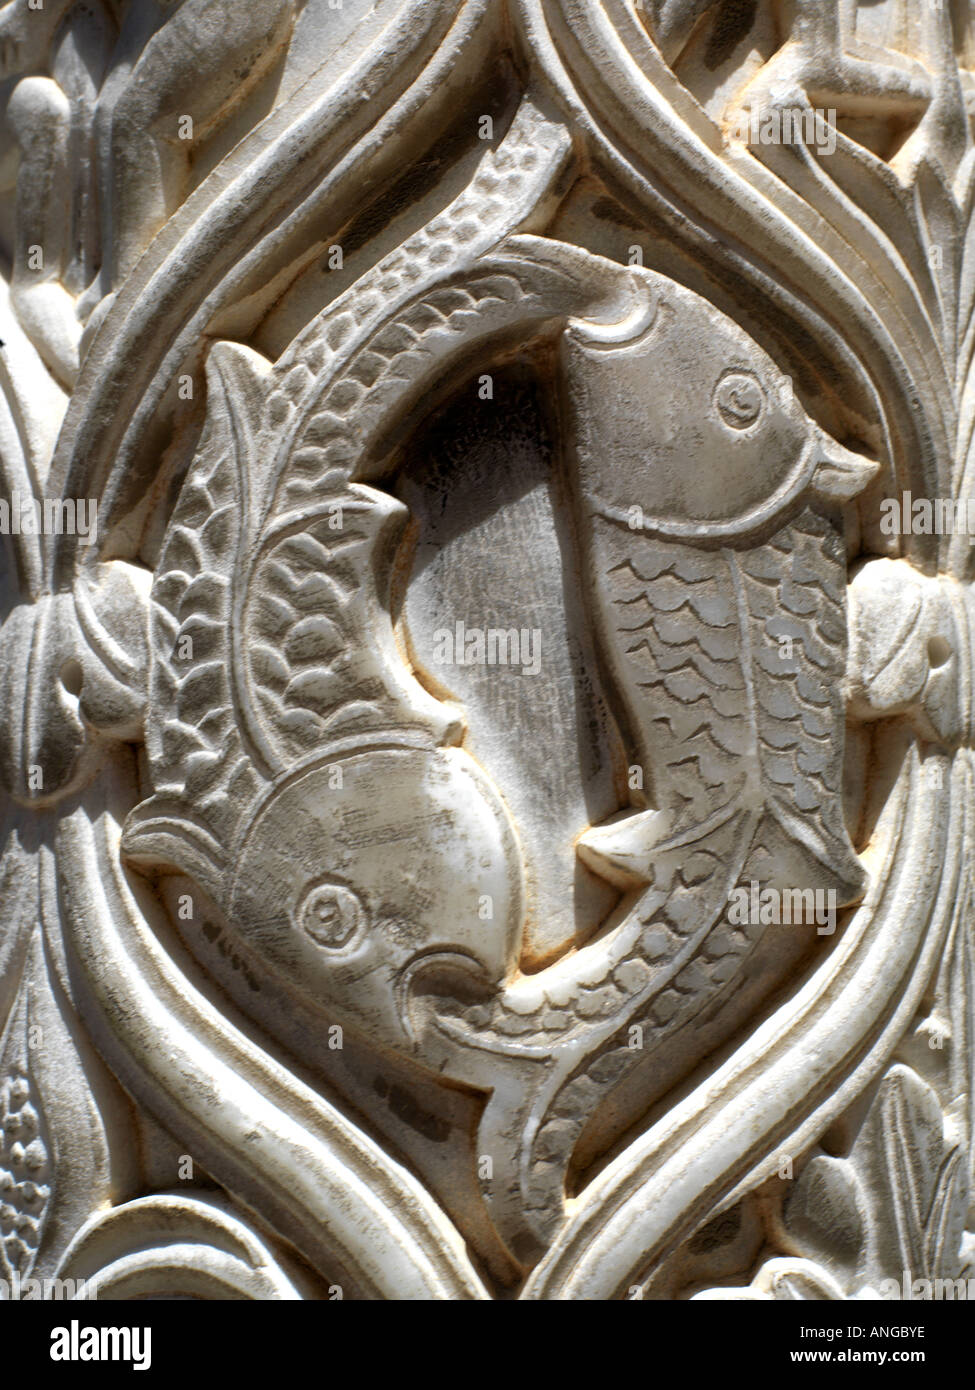 Monreale Sicilia Italia Monastero di Monreale Chiostro Dettaglio scolpito di pesce in colonna di marmo Foto Stock